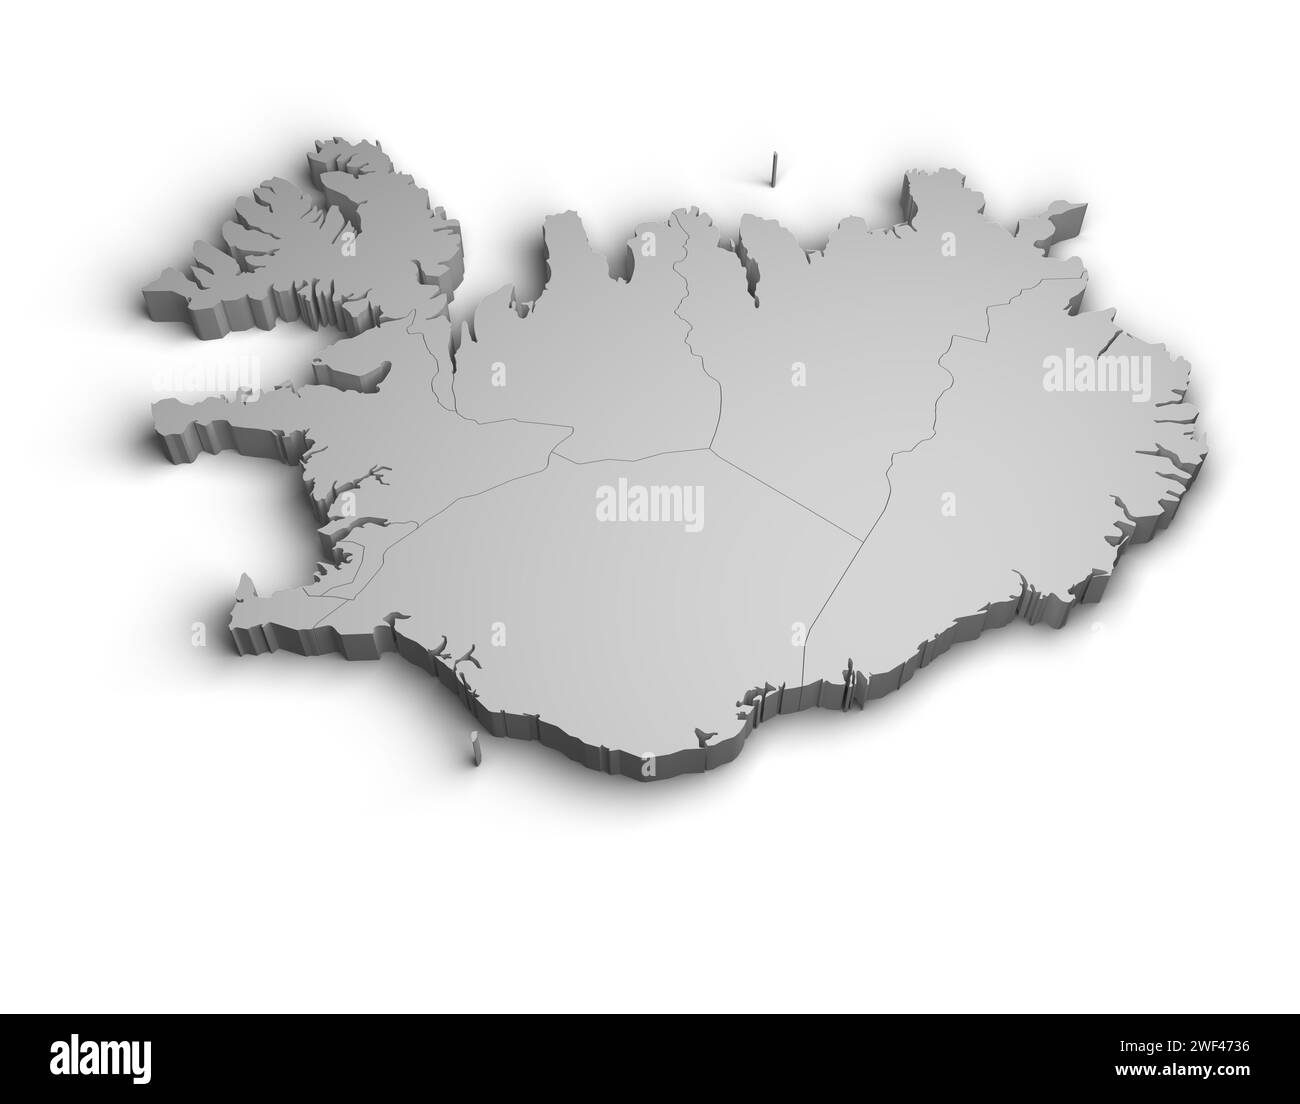 3d Iceland map illustration white background isolate Stock Photo